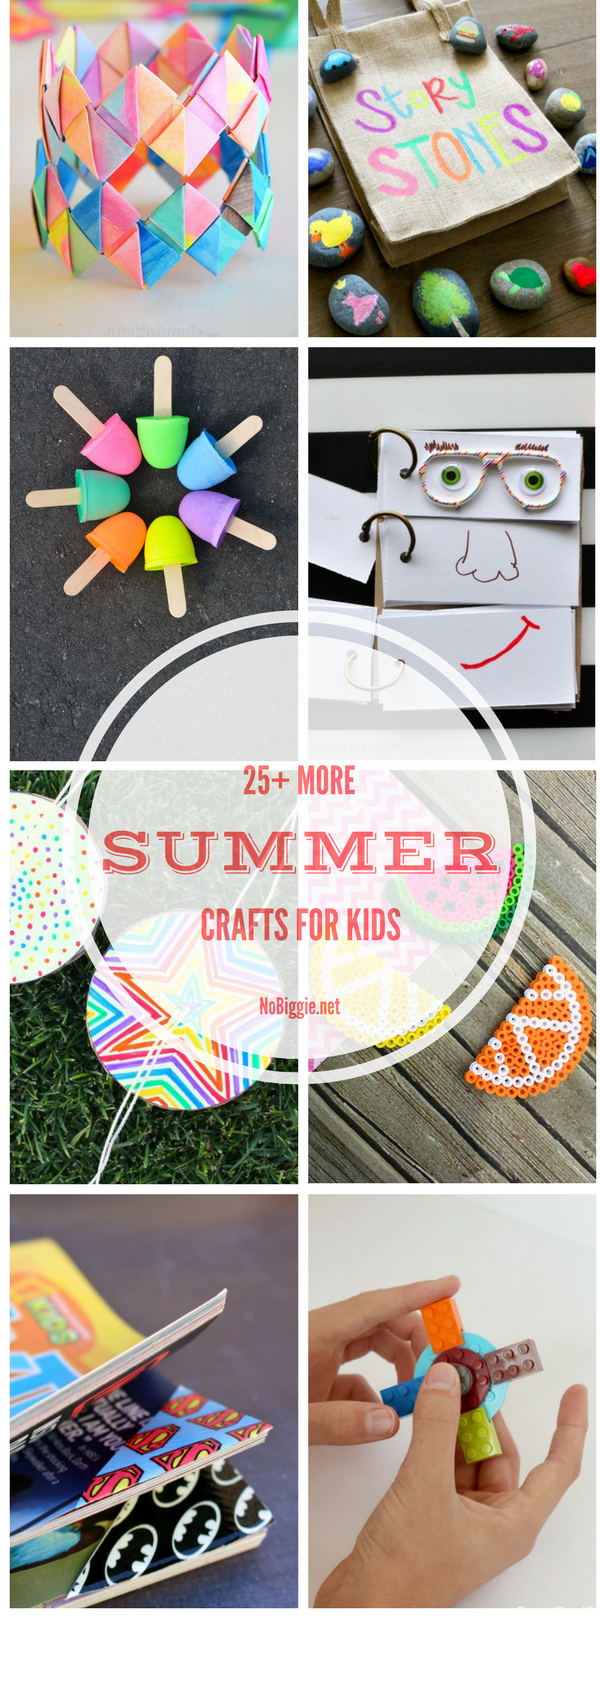 25+ MORE Crafts for Kids | NoBiggie.net